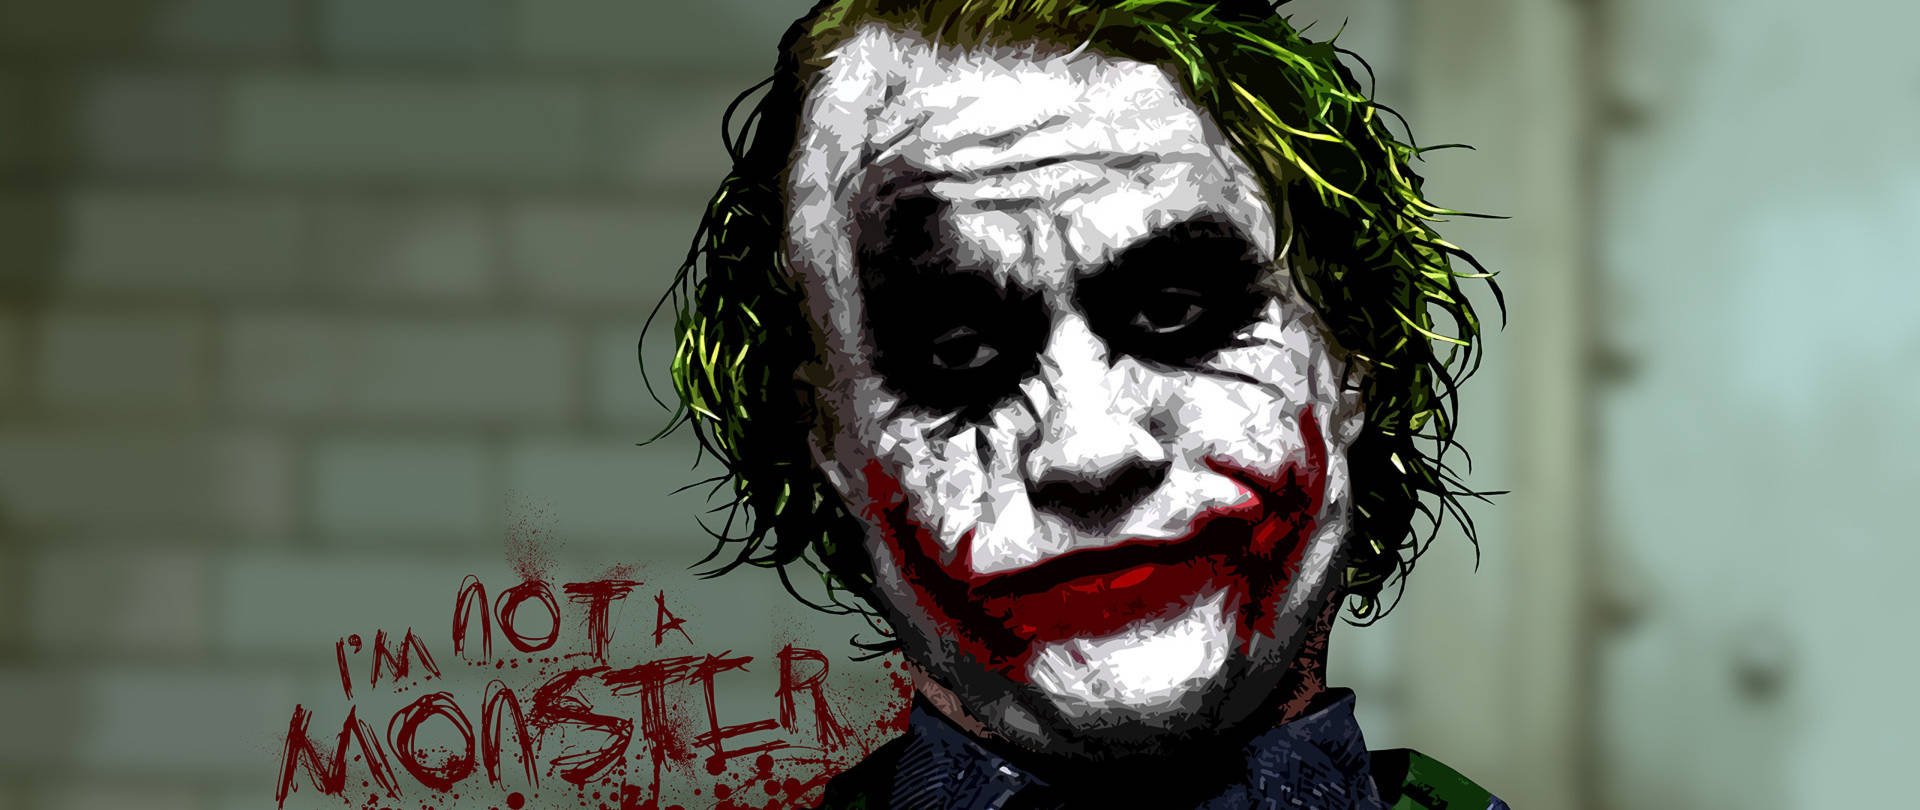 Download Joker I'm Not A Monster 4k Ultra Hd Wallpaper ...